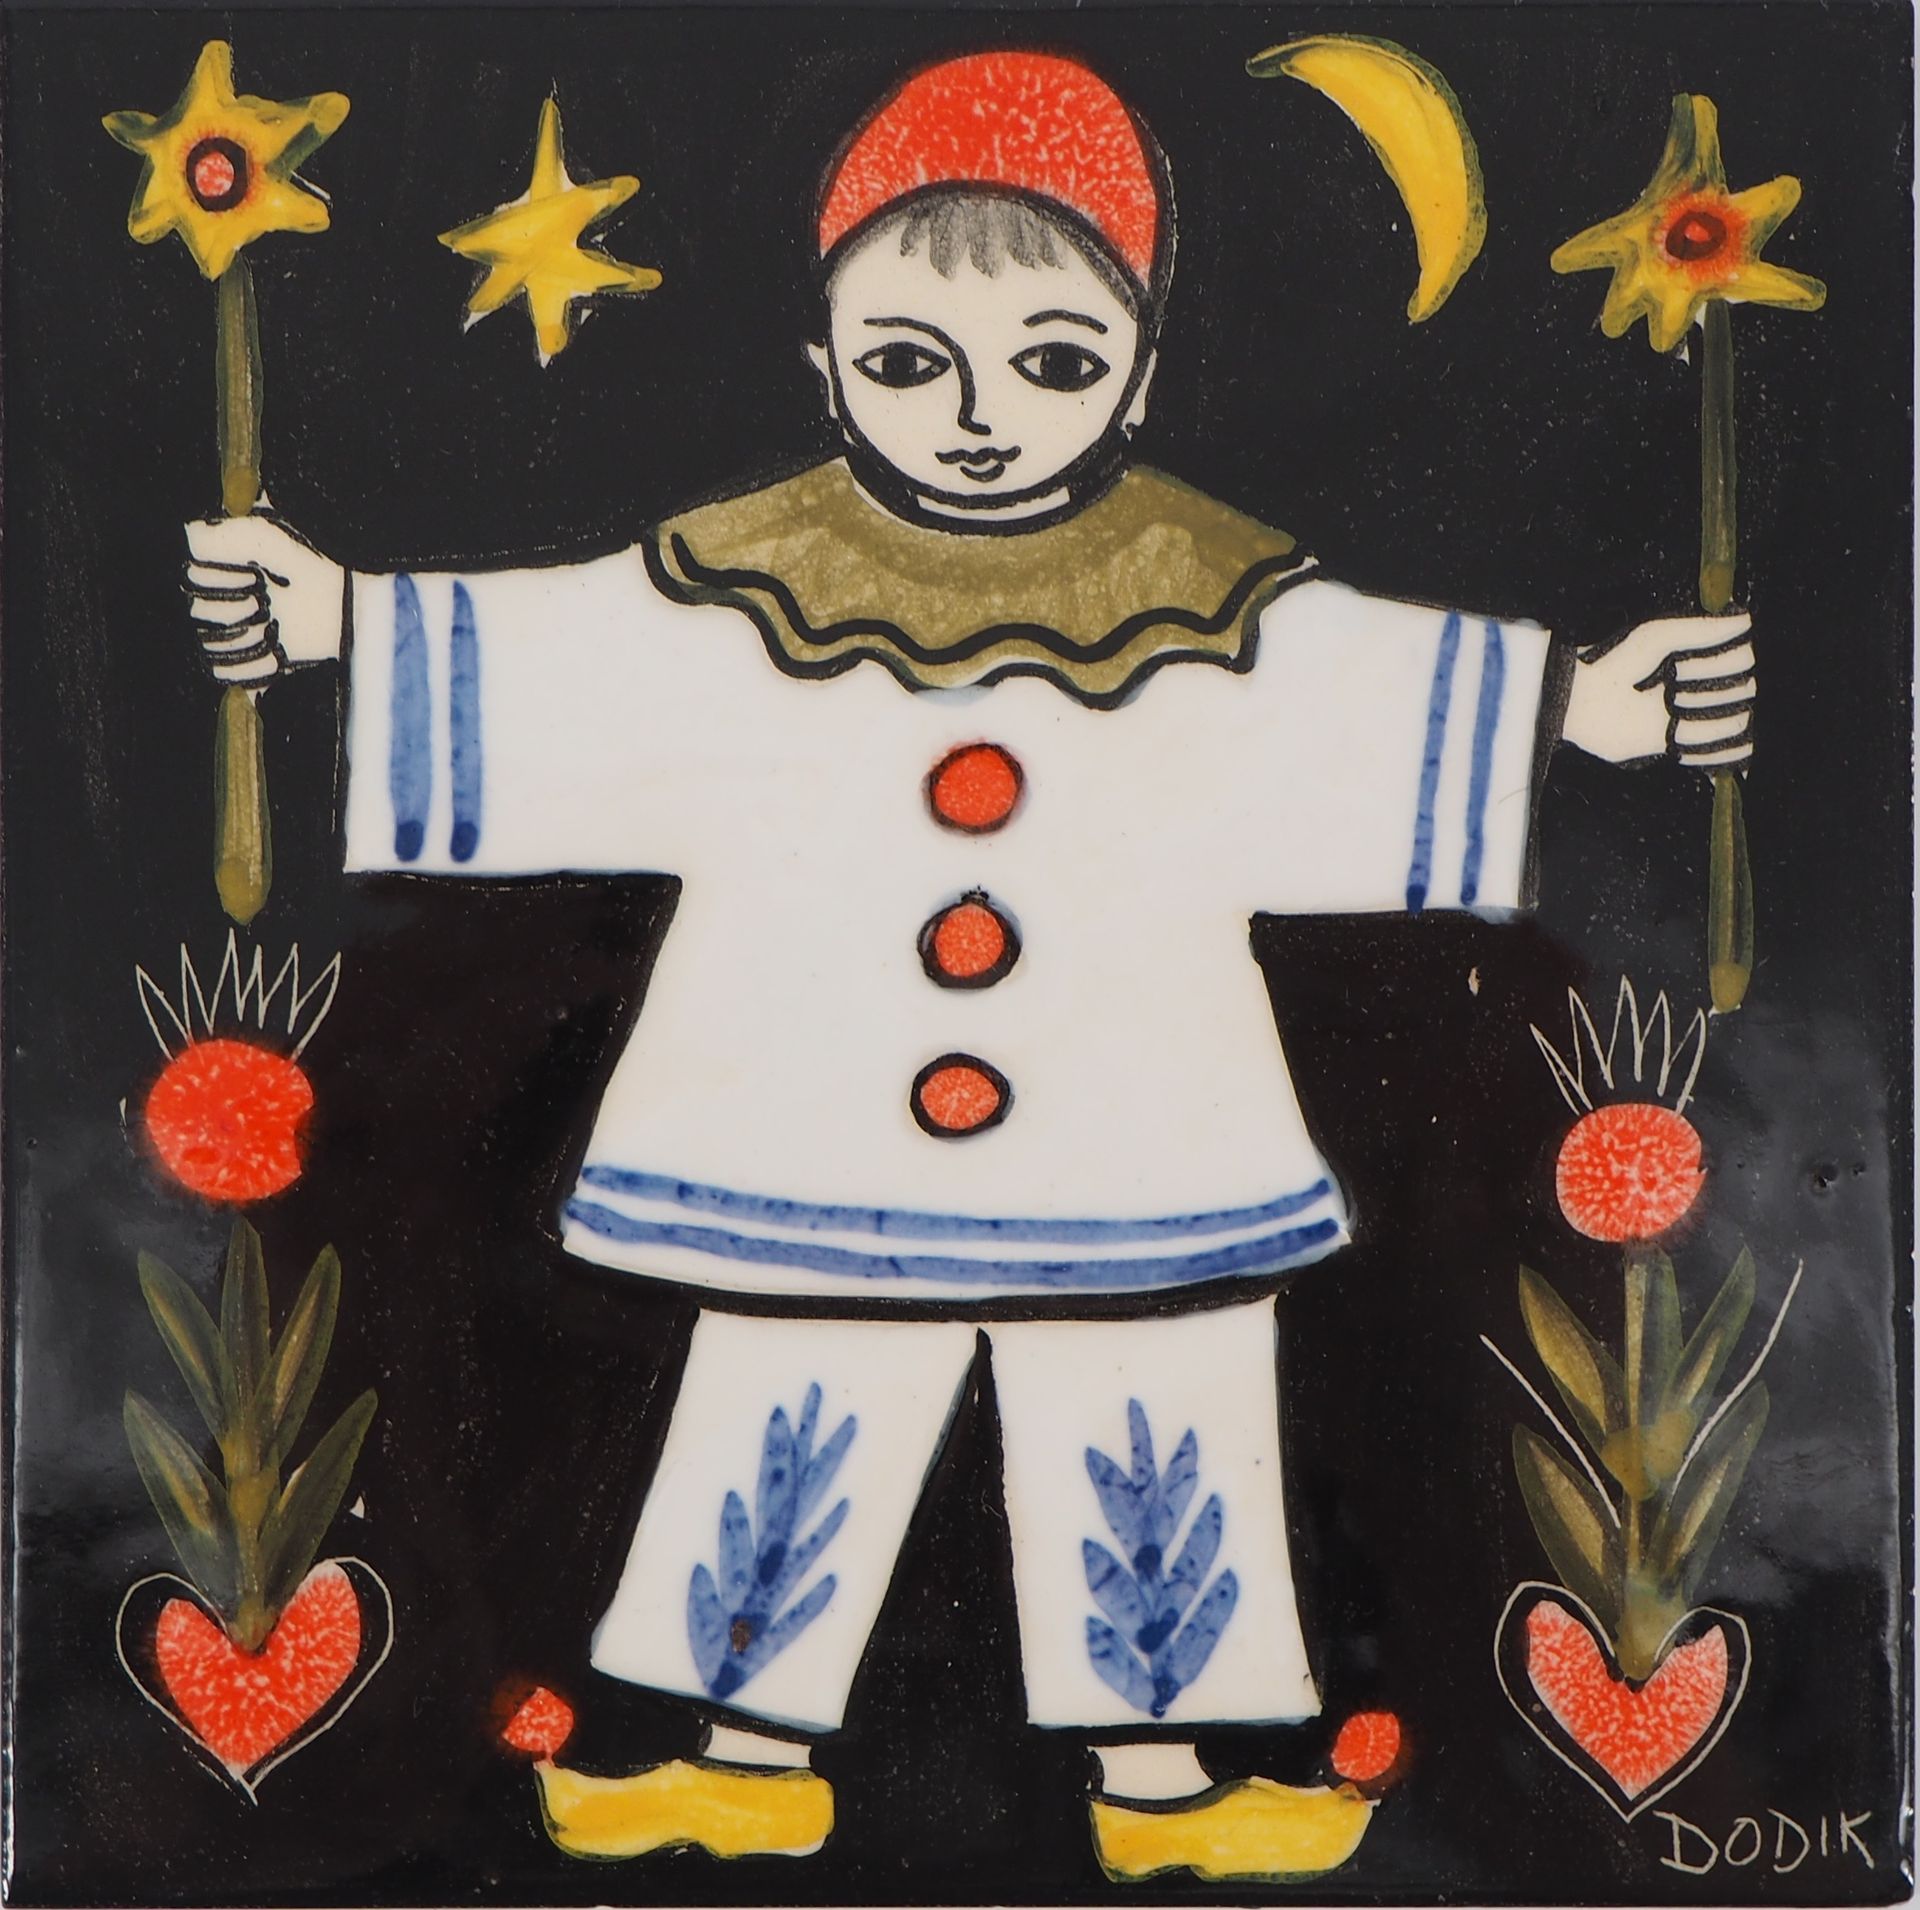 DODIK DODIK (Dodik Jégou, 1934-)

Pierrot la luna

Ceramica originale (Saint Mal&hellip;